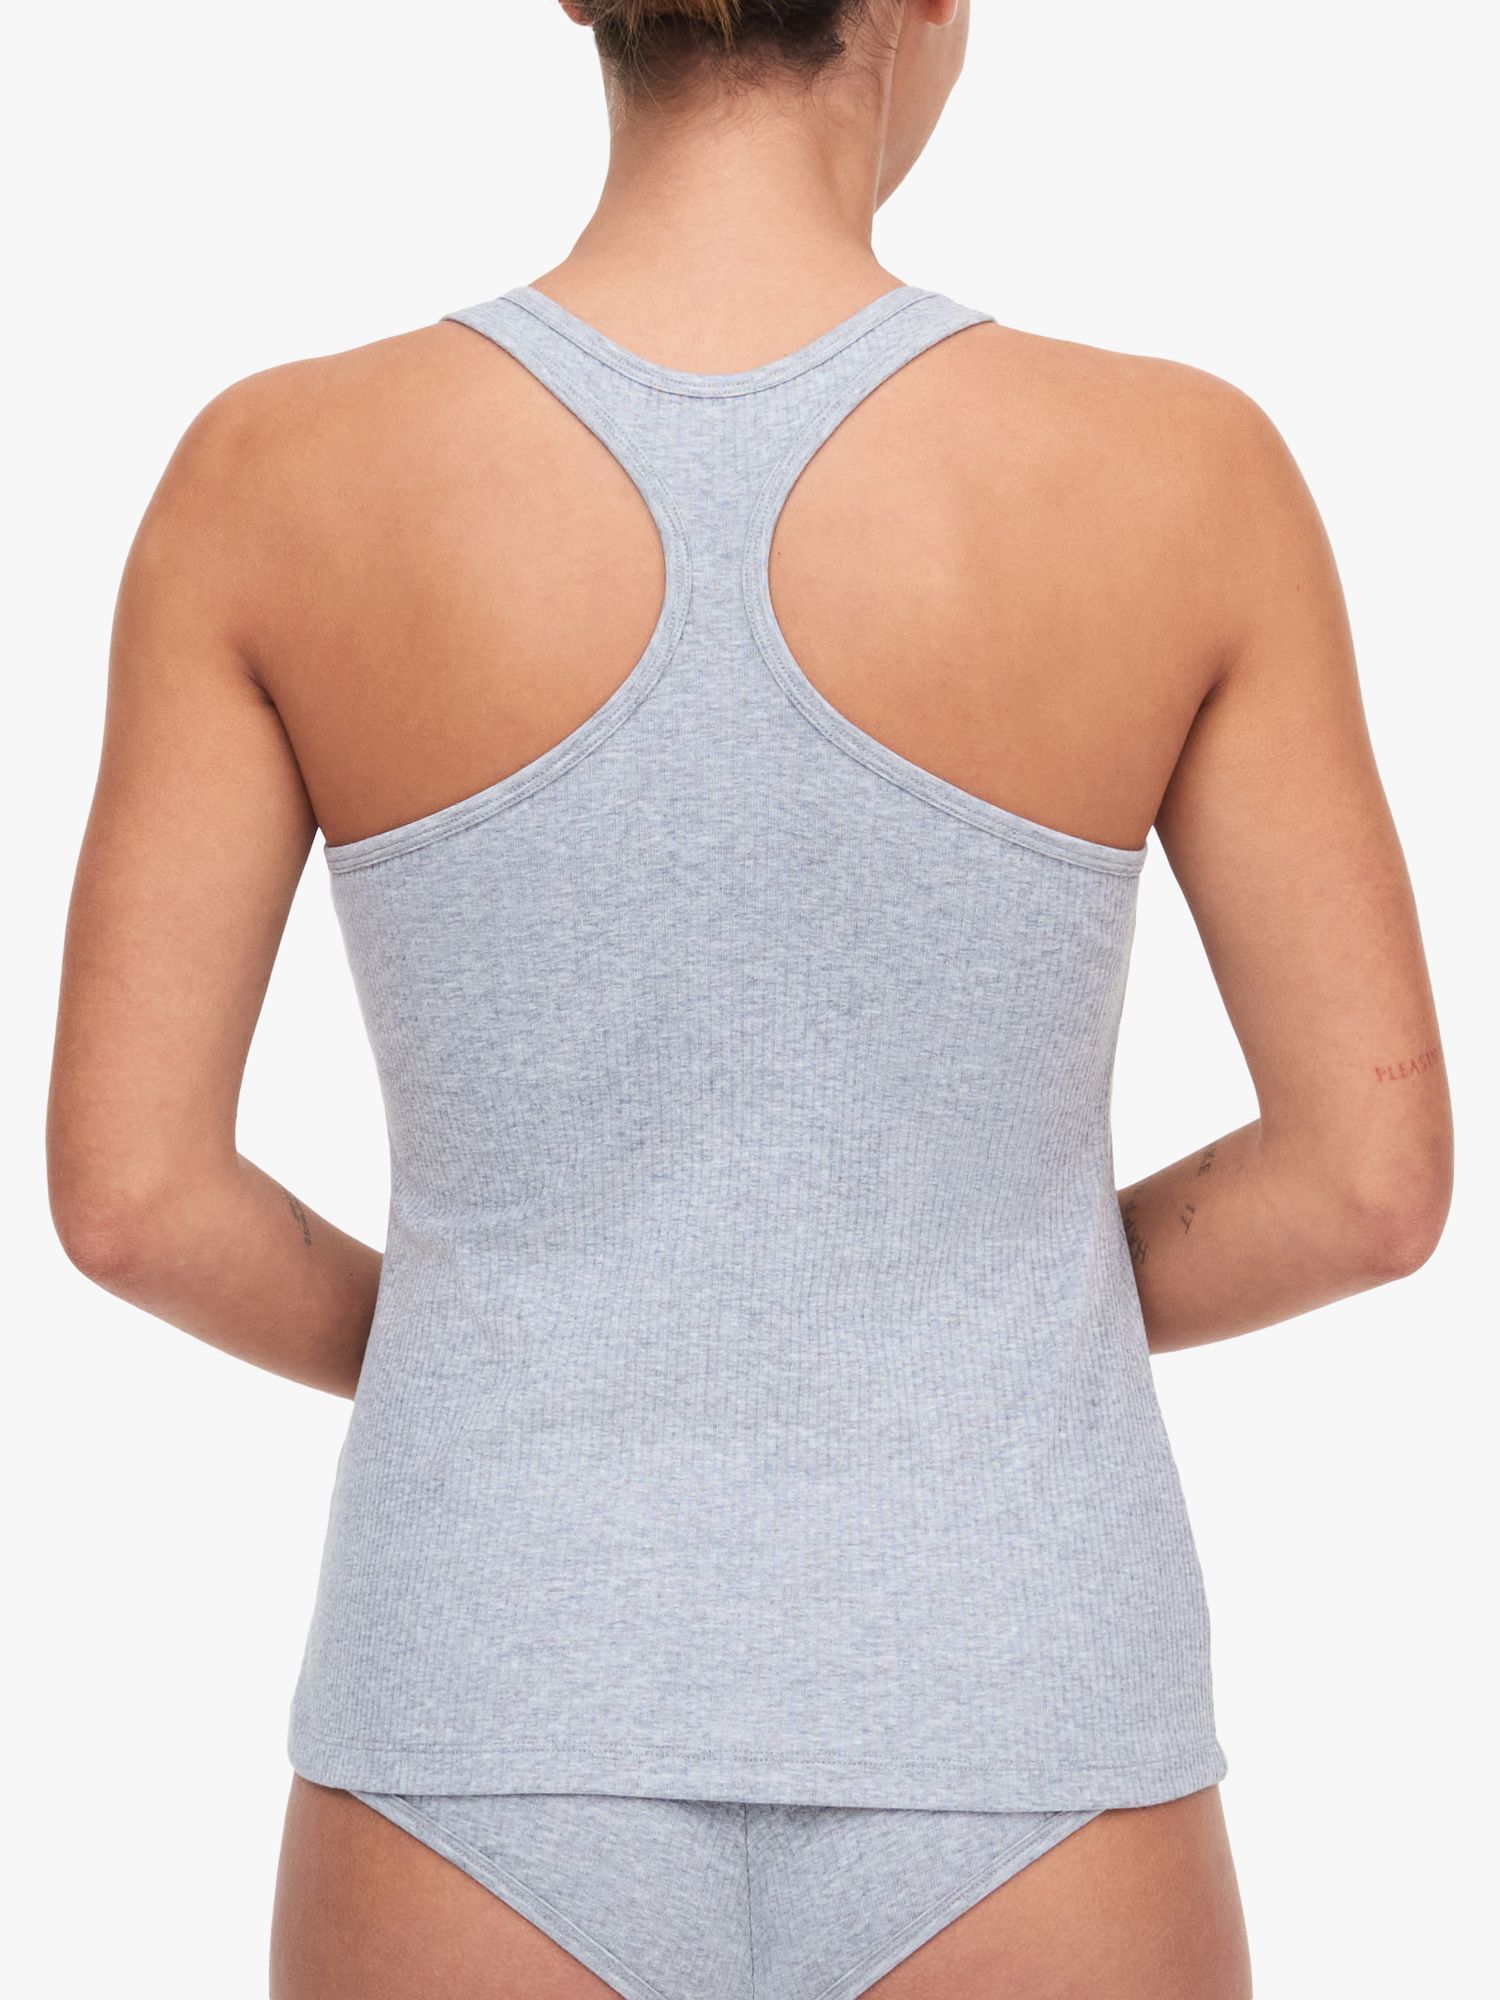 Buy Chantelle Cotton Comfort Vest Online at johnlewis.com